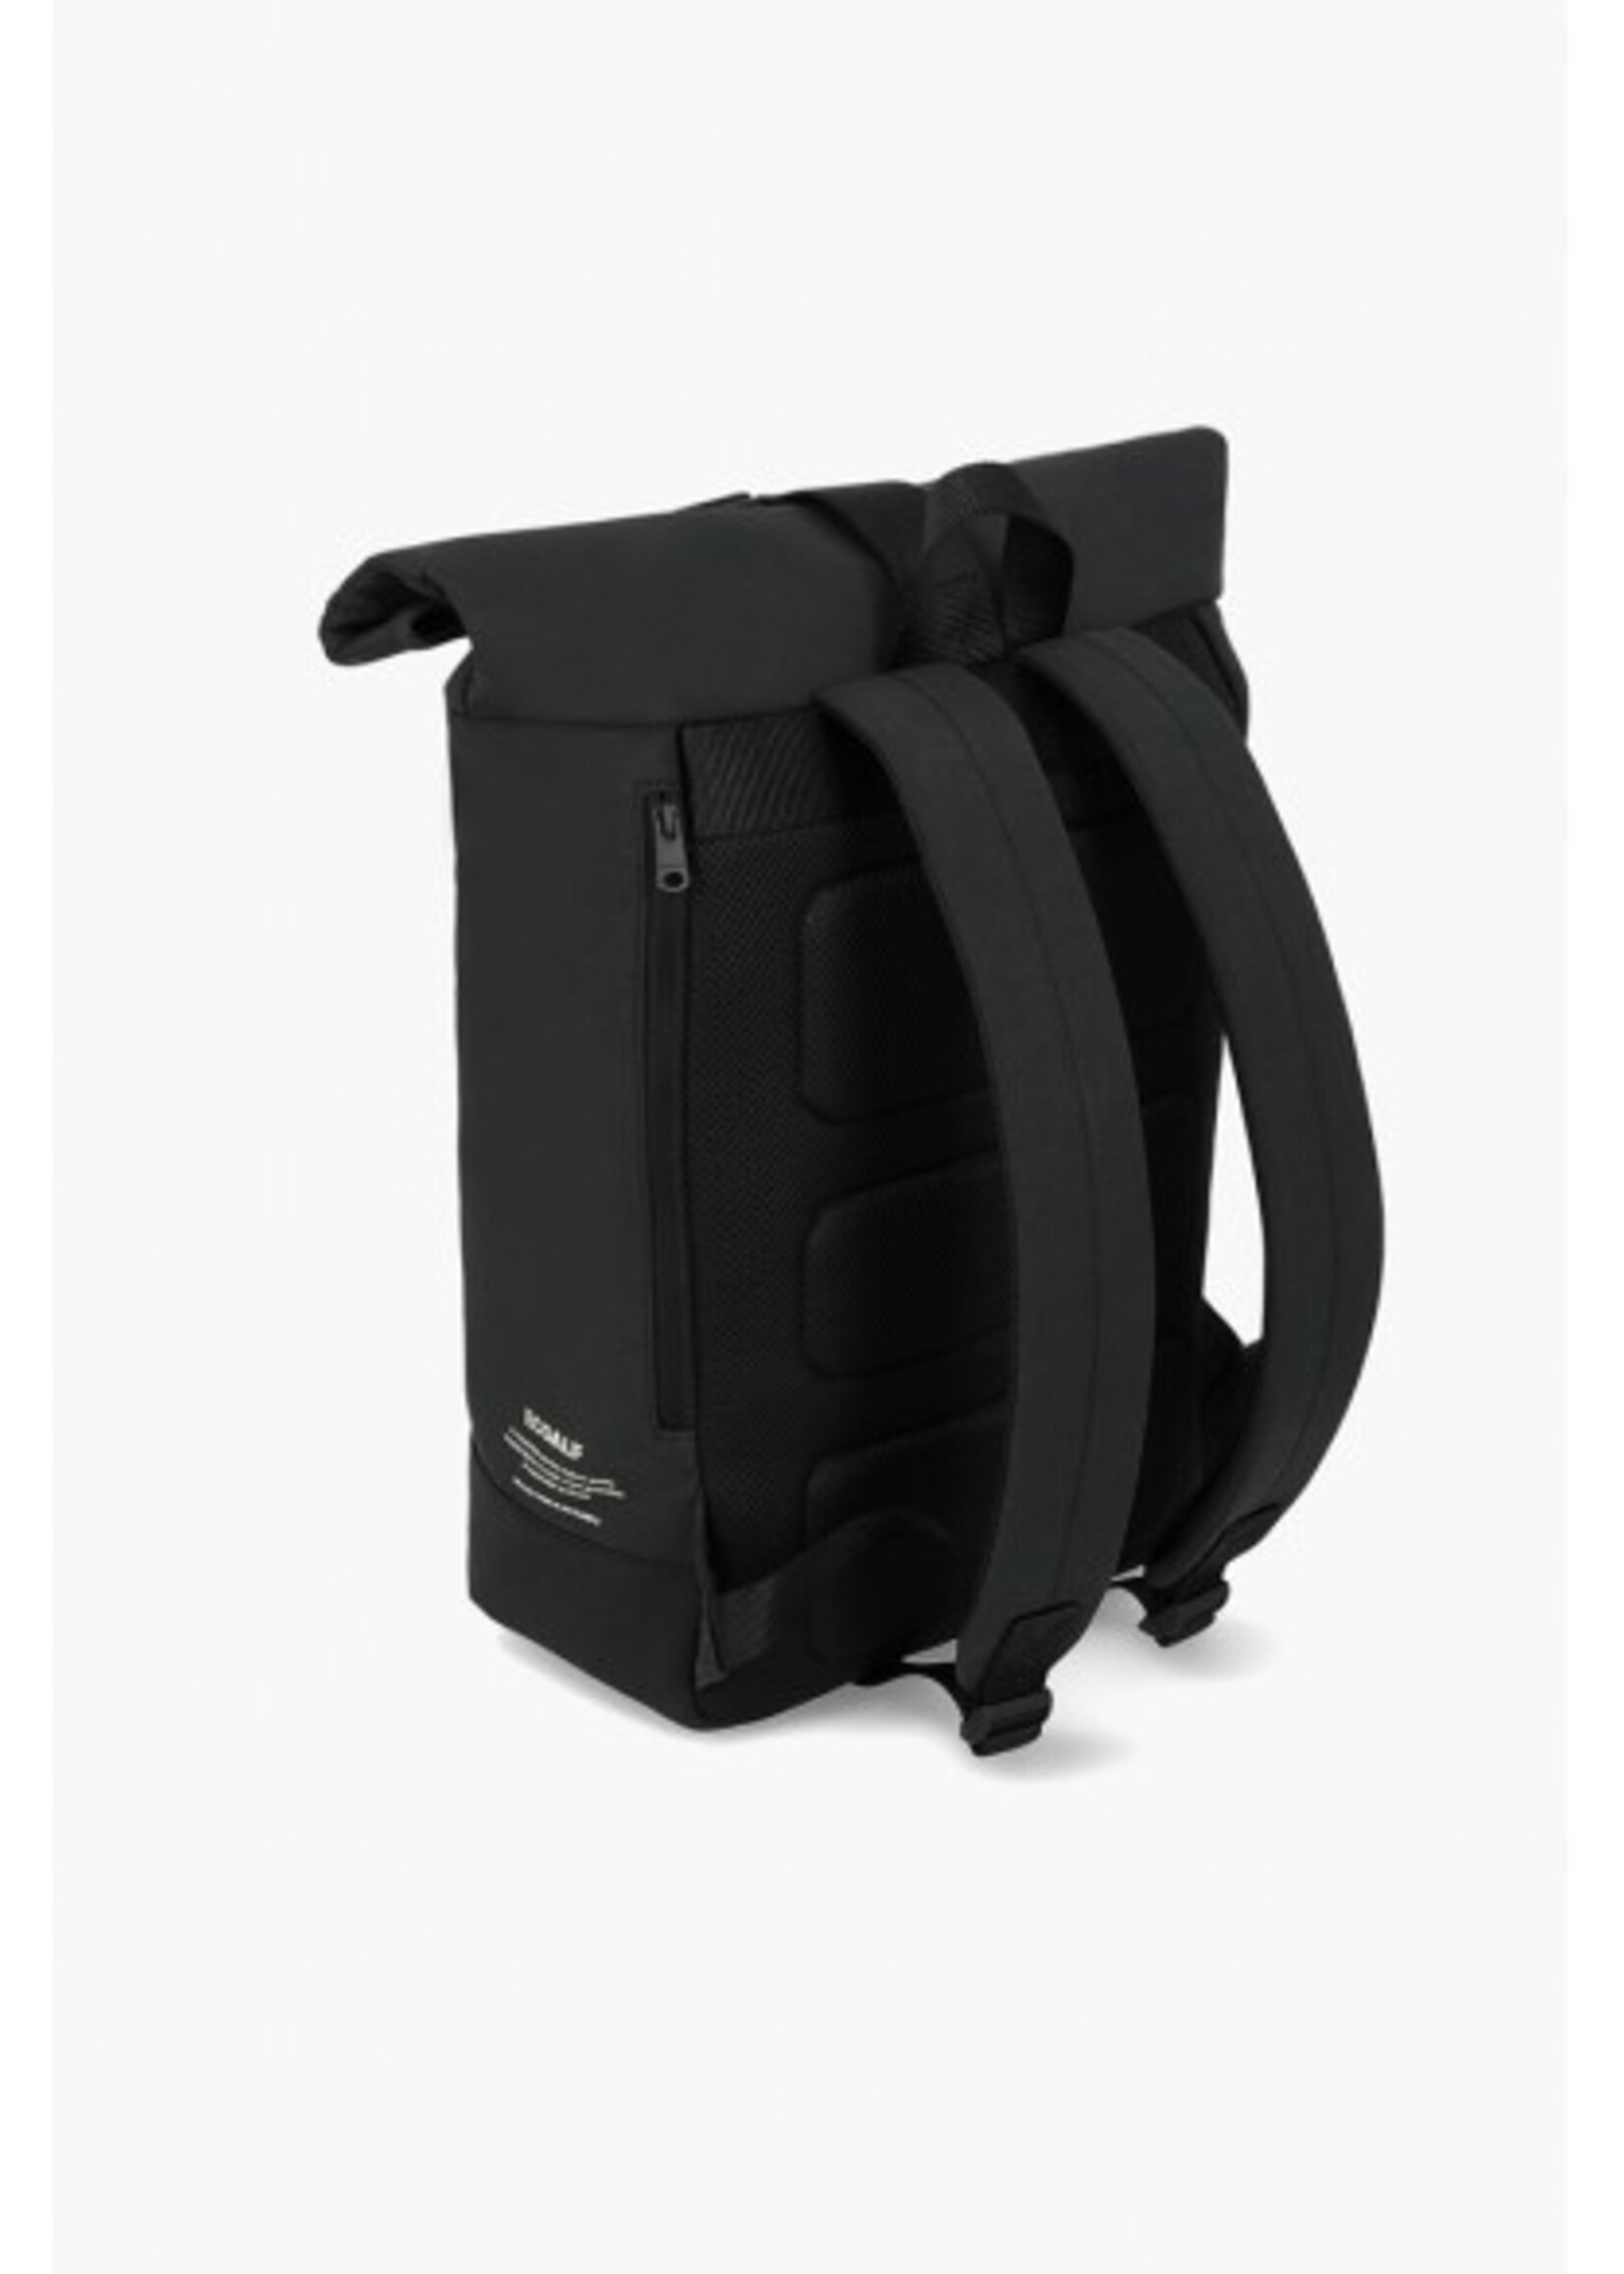 Ecoalf Ginza Backpack Black